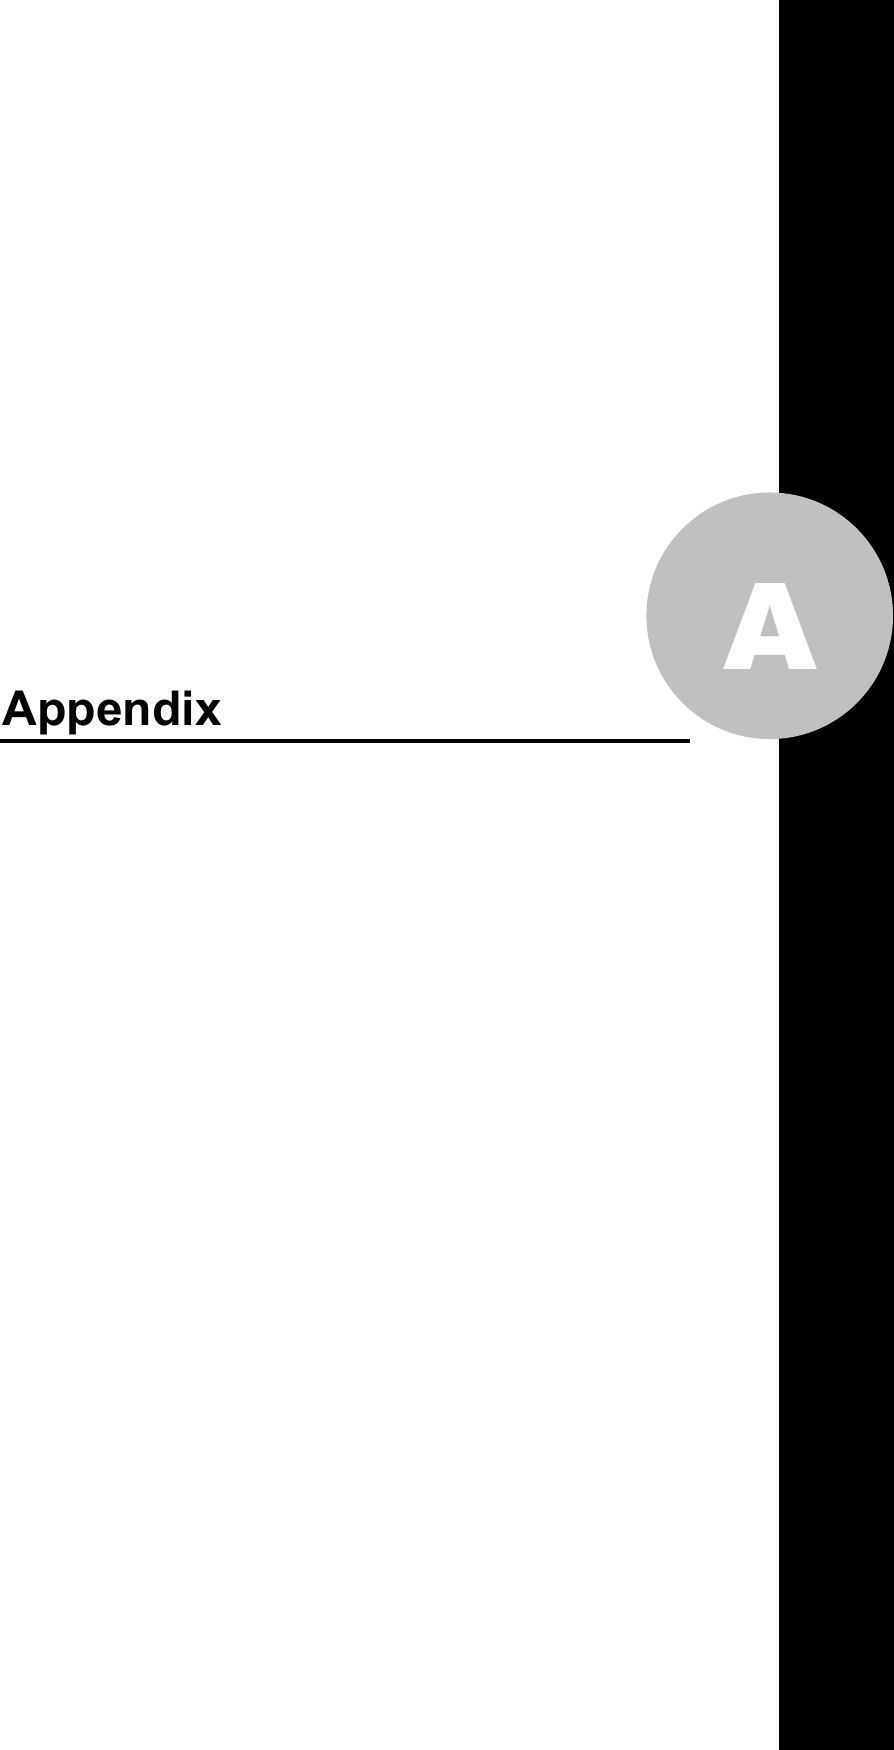   A                 Appendix         